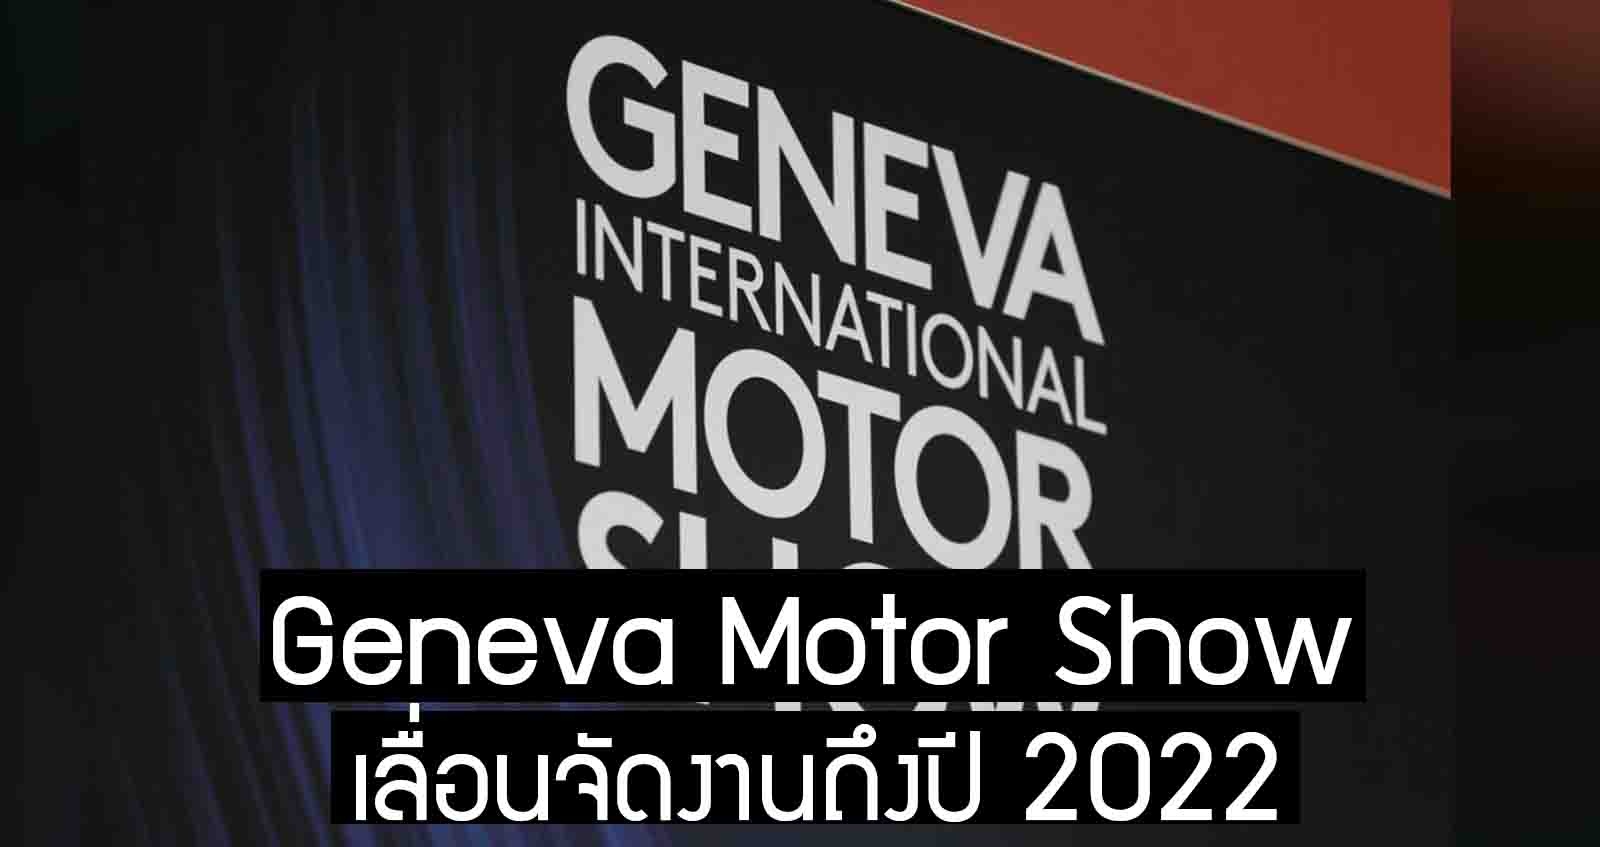 Geneva Motor Show เลื่อนจัดงานจนถึงปี 2022